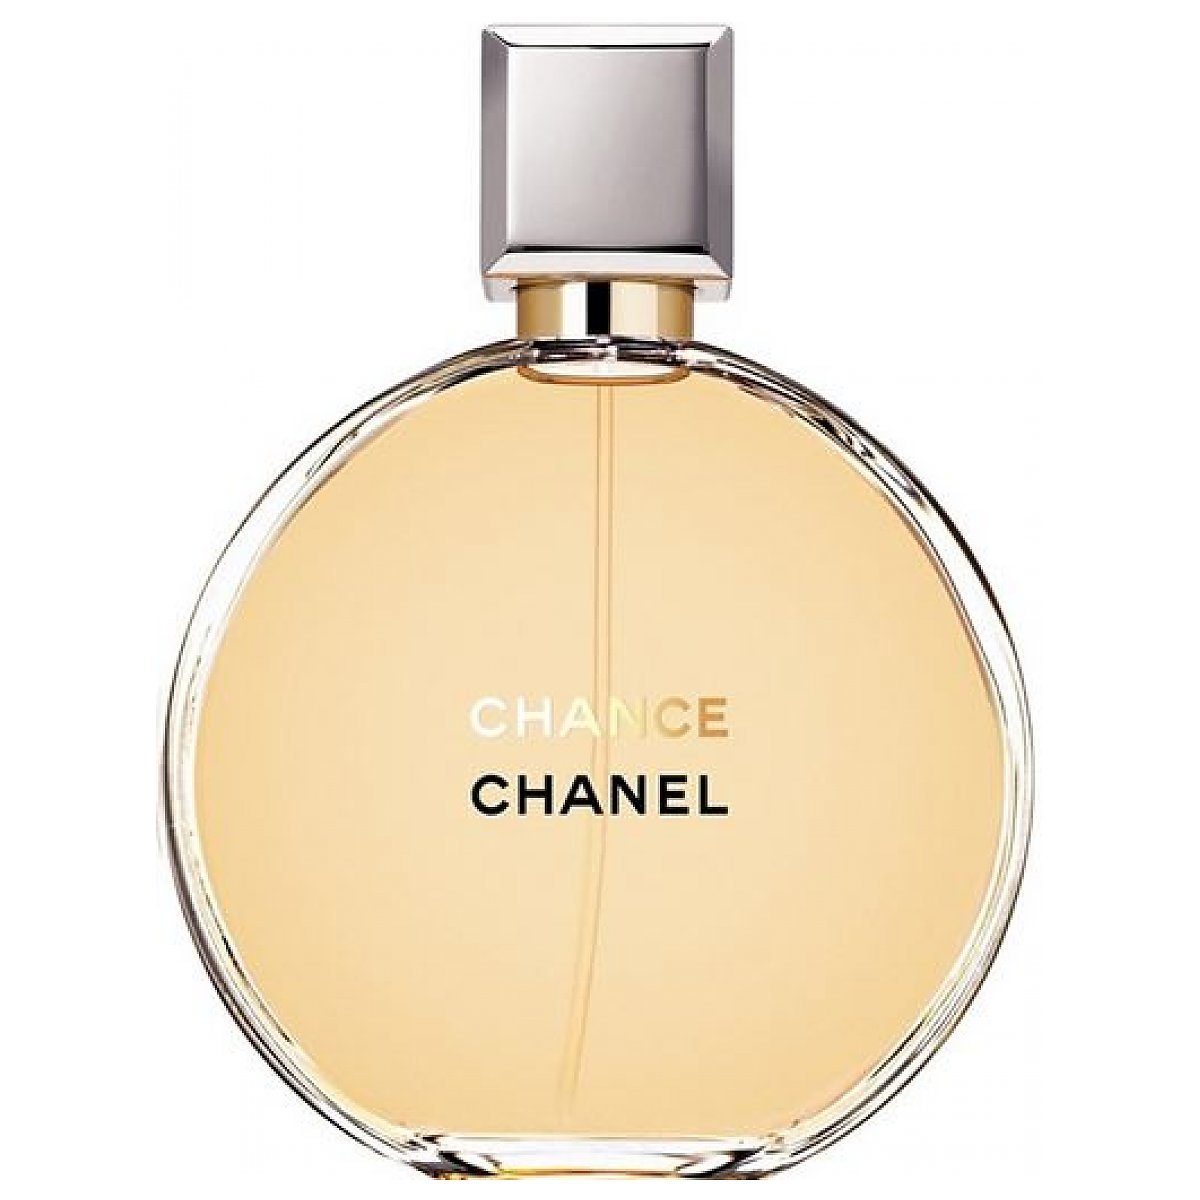 Chanel Chance woda perfumowana dla kobiet  notinopl